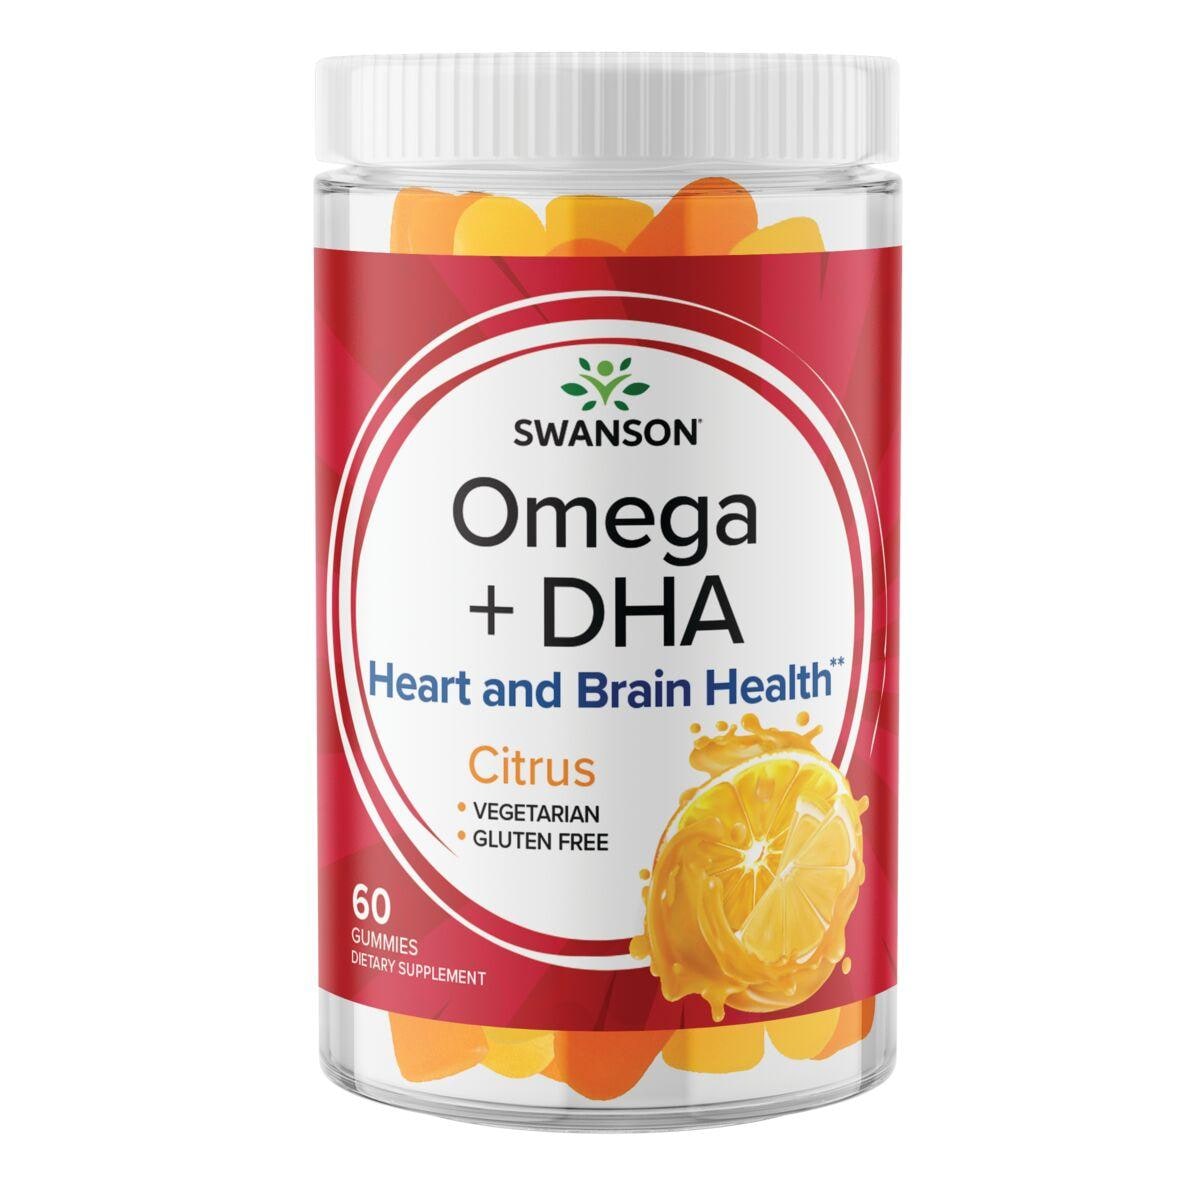 Swanson Premium Omega + Dha Gummies - Citrus Supplement Vitamin 60 Gummies